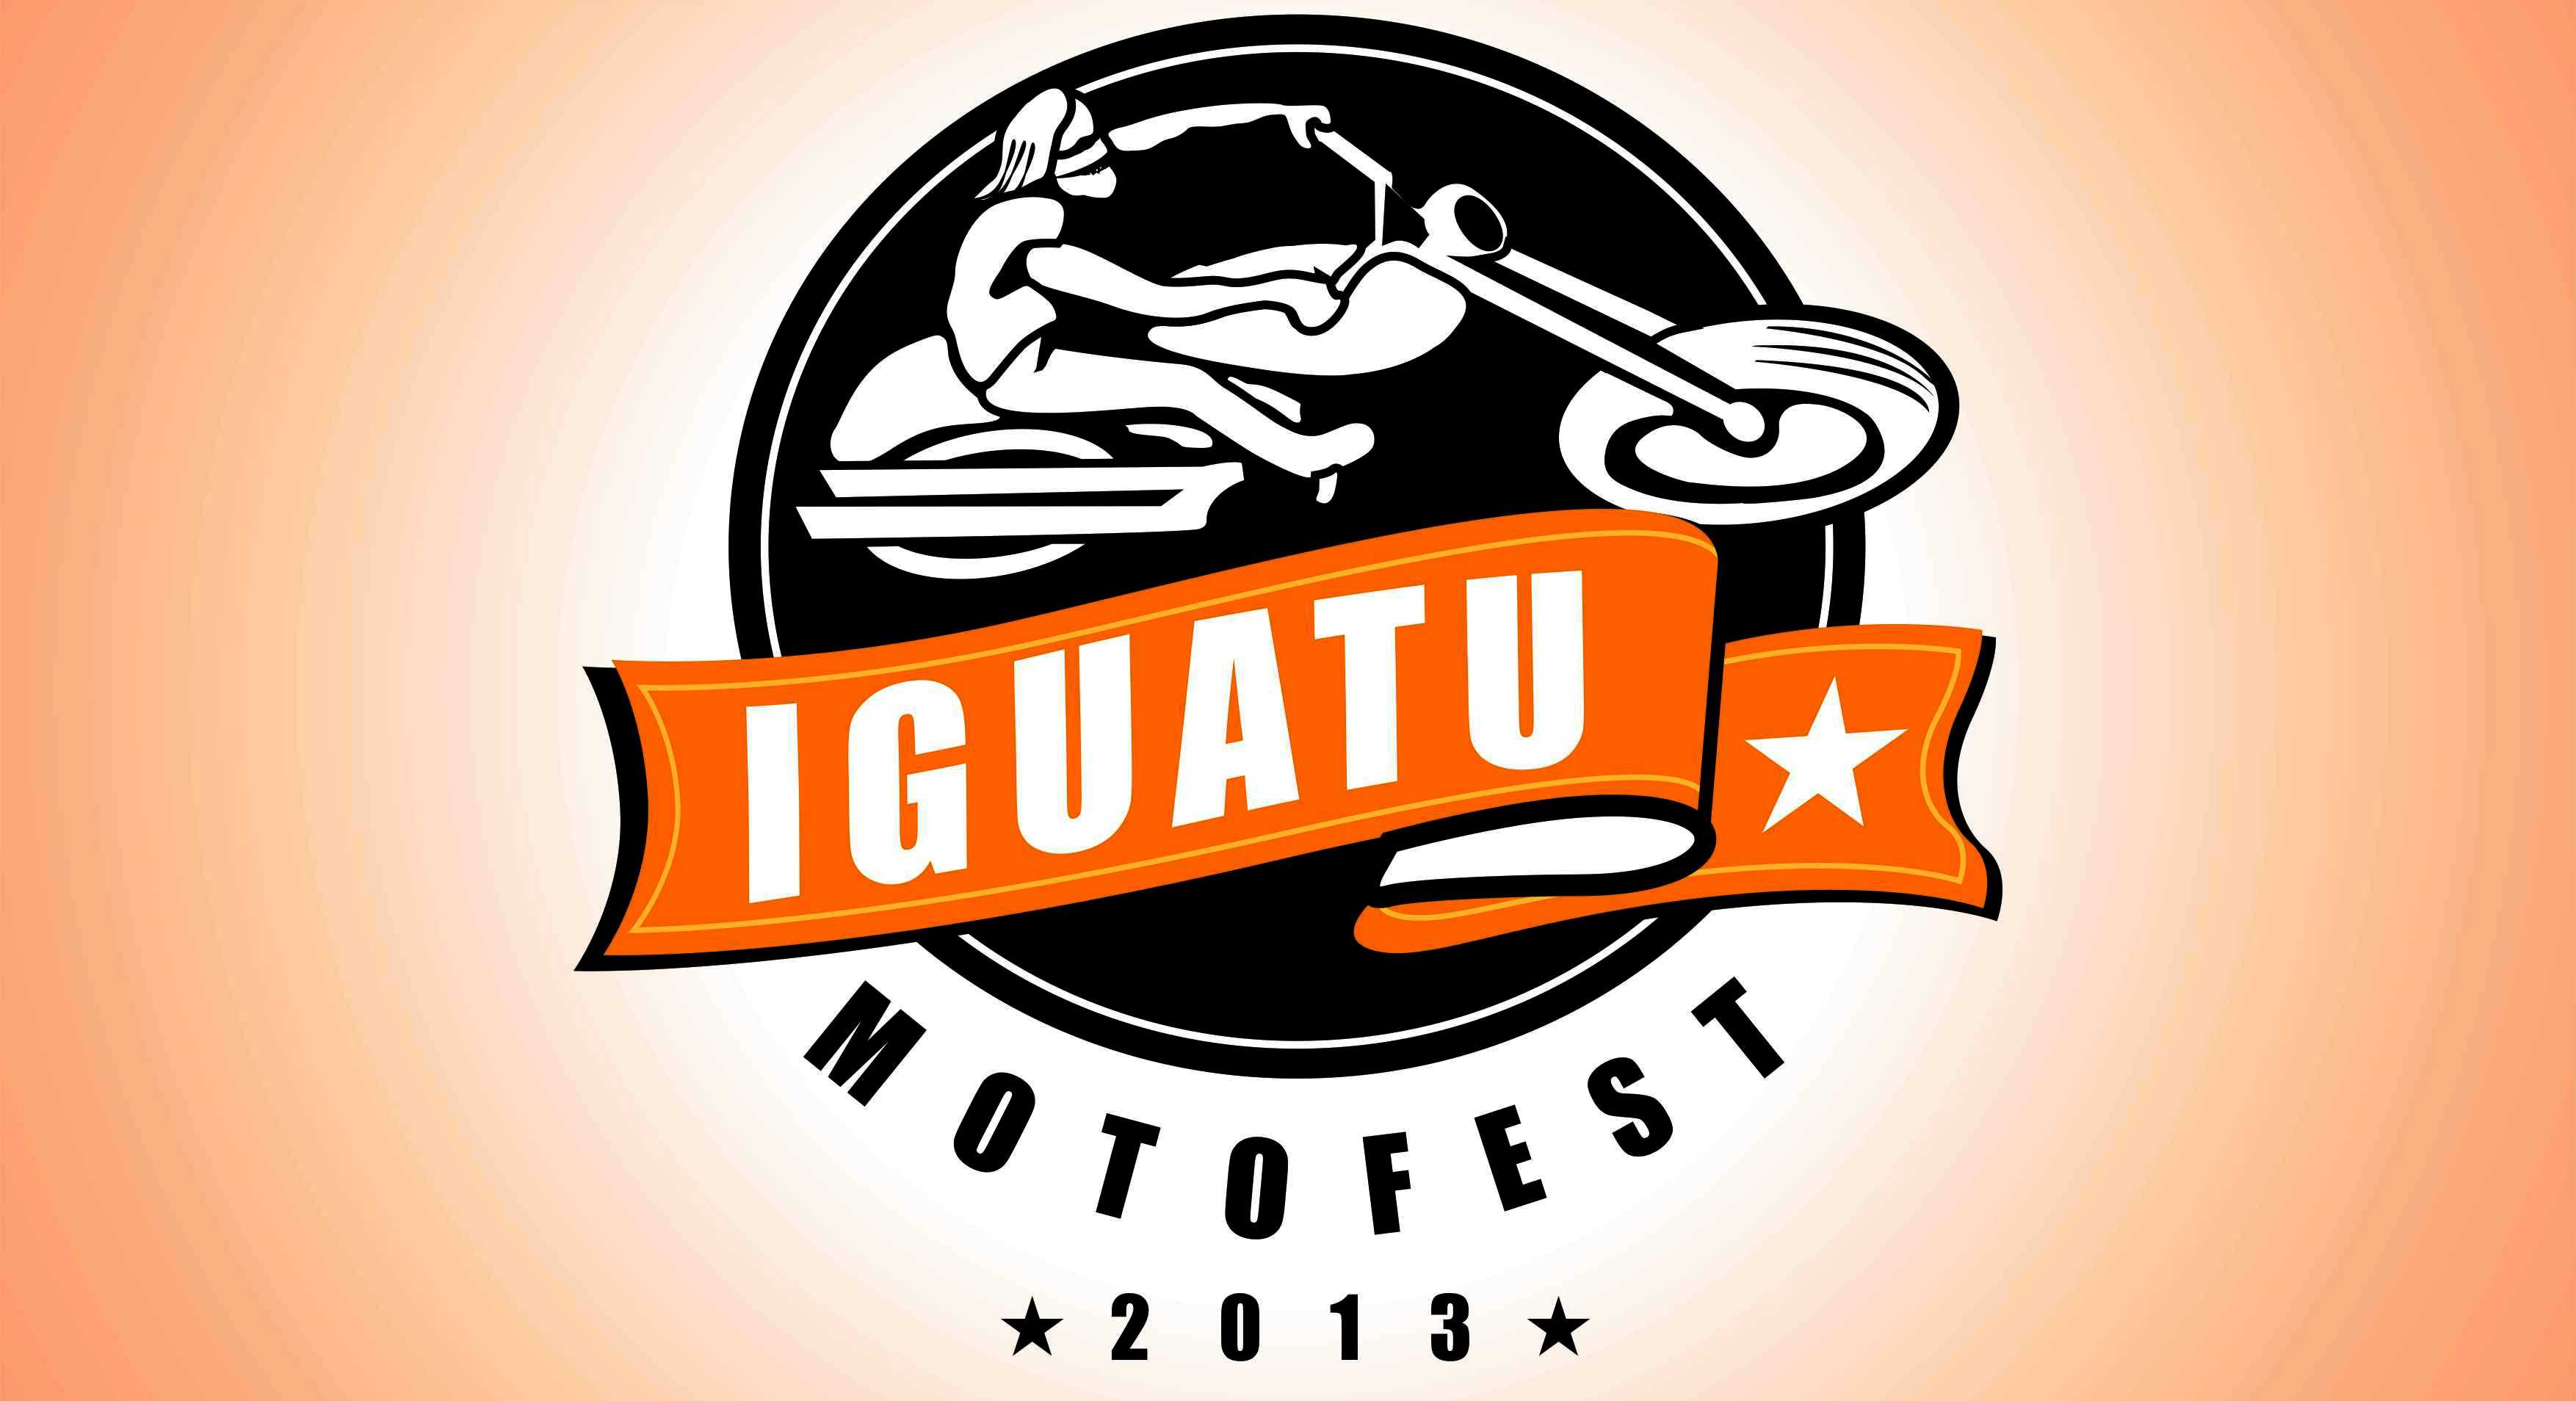 ENTREVISTA NO IGUATU.NET – Iguatu Moto Fest promete movimentar a cidade no mês de maio